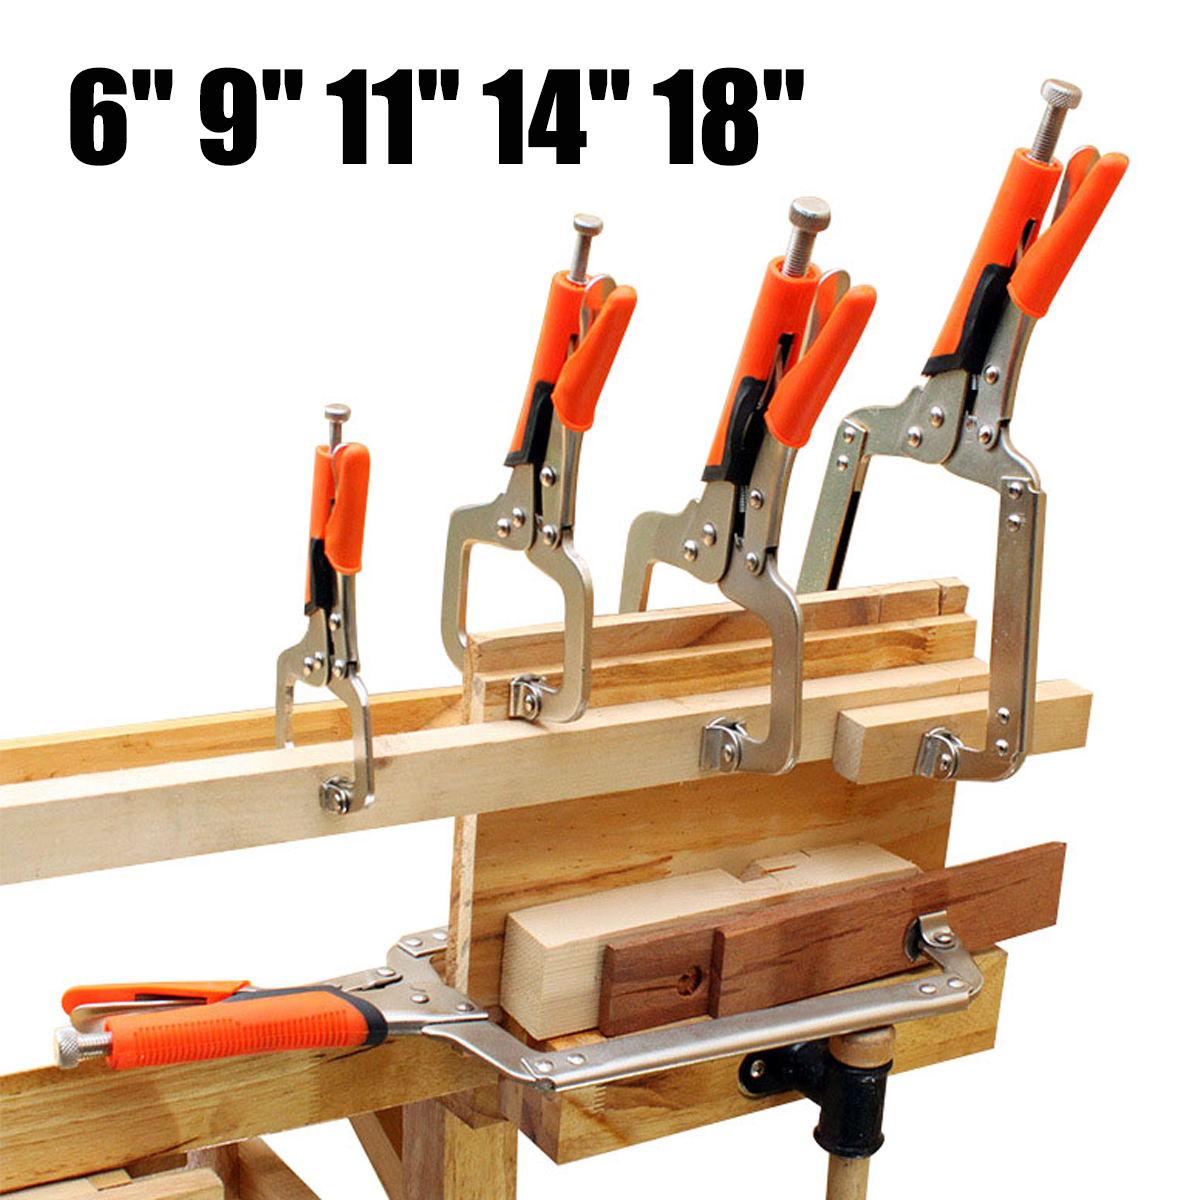 69111418inch-Alloy-Steel-C-Bracket-Vise-Grip-Welding-Quick-Pliers-Hand-Tool-1260840-1